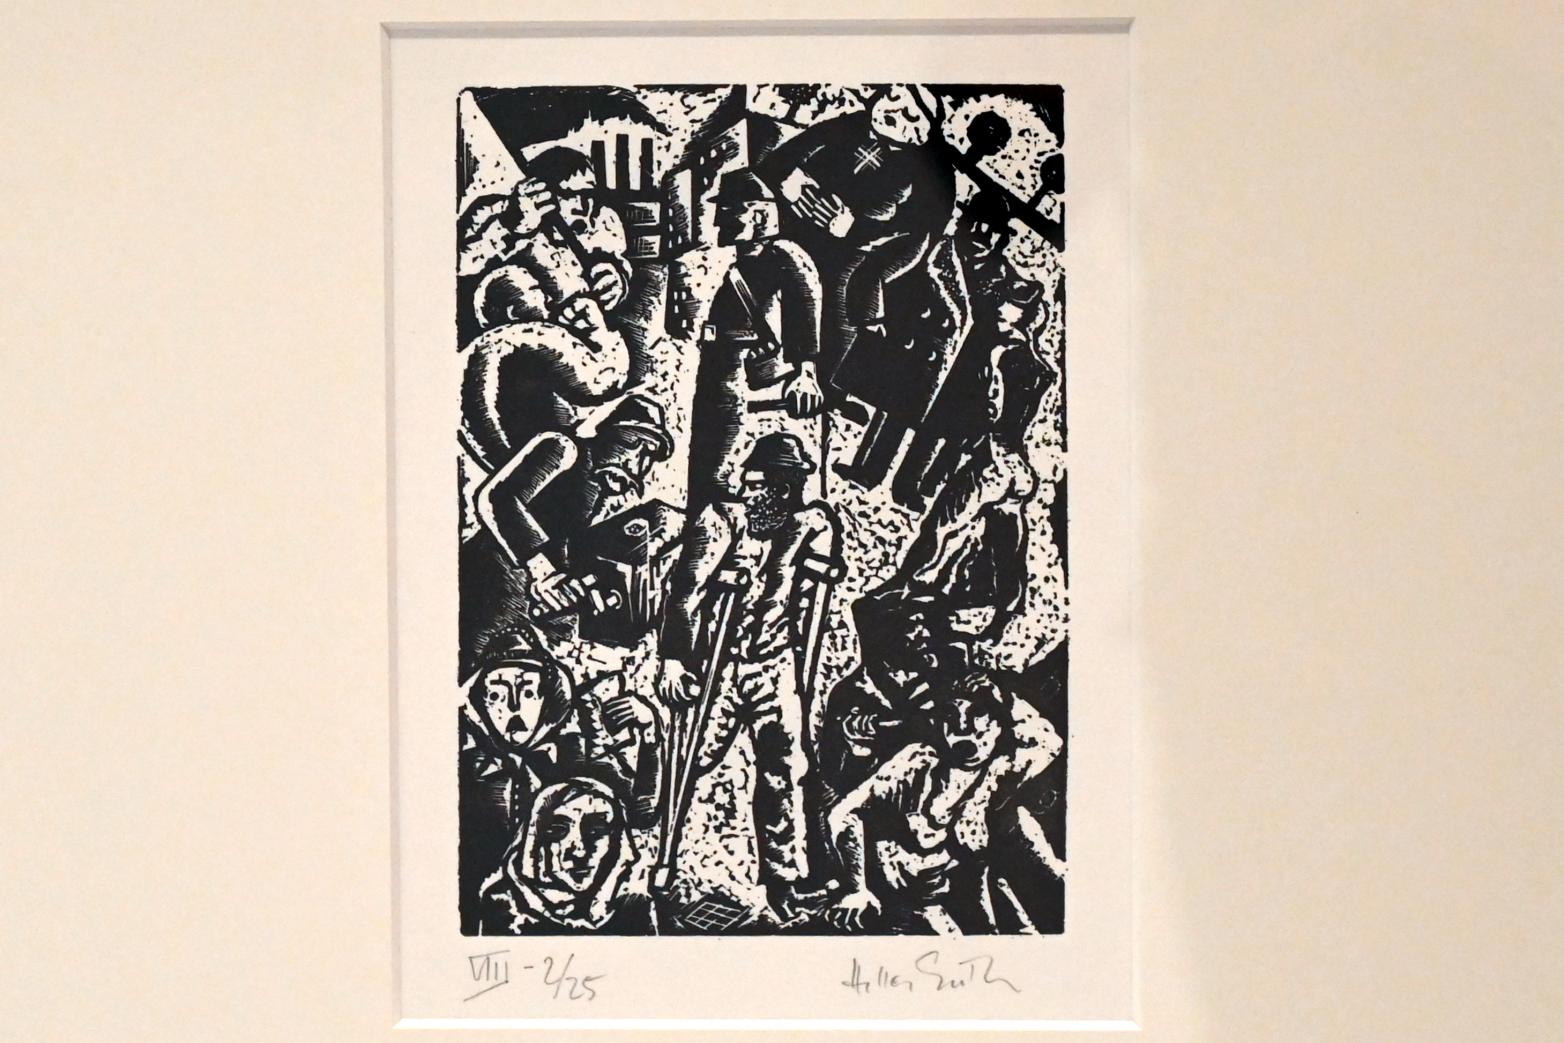 Hella Guth (1933), Ballade von der Unzulänglichkeit des menschlichen Strebens, Kiel, Kunsthalle, ÜberLeben 3, 1933